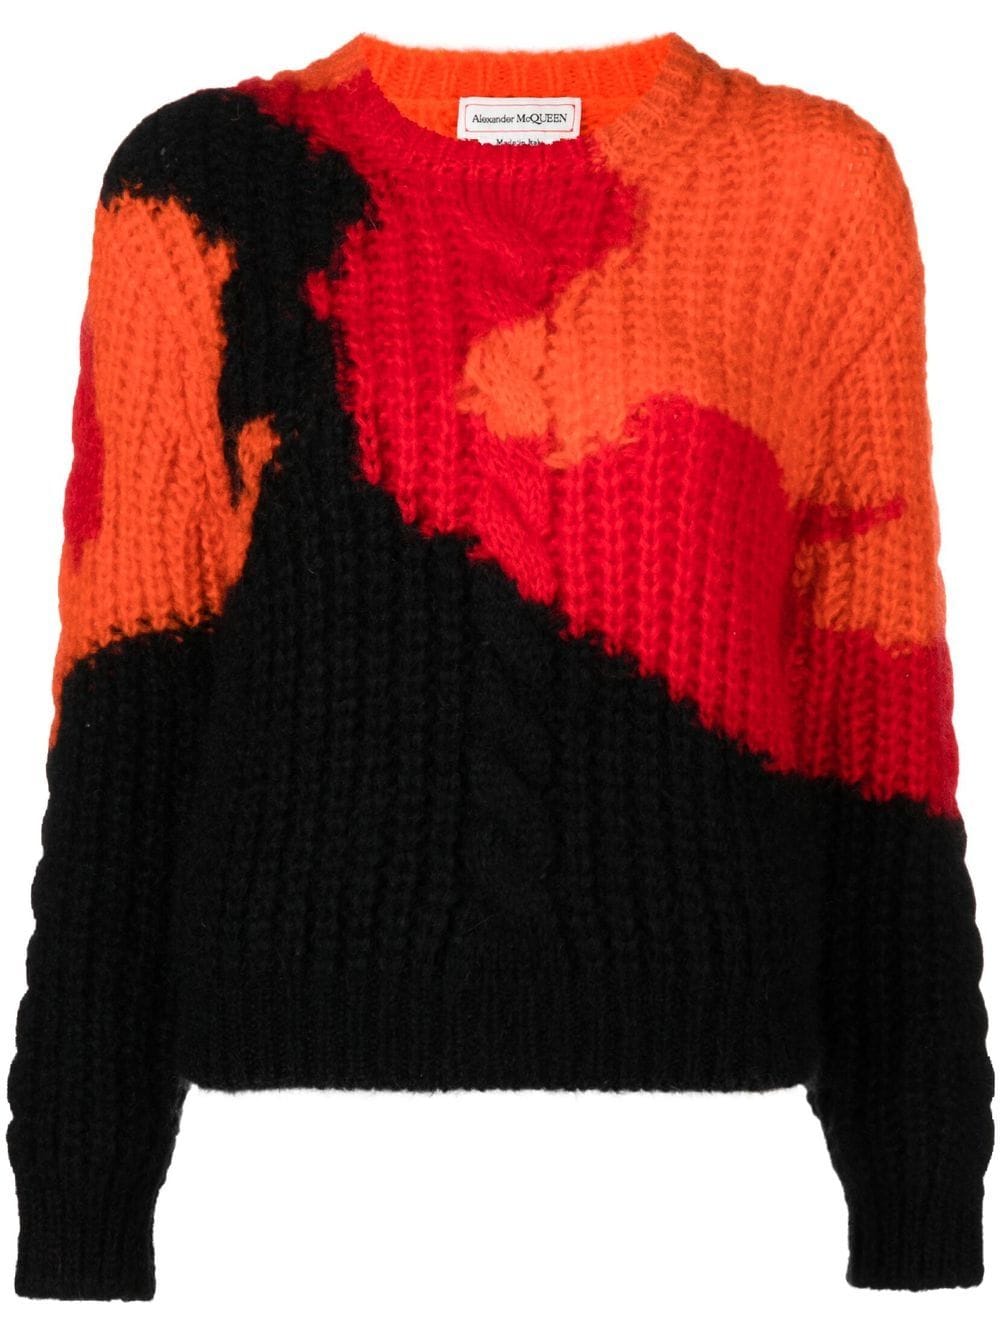 Alexander McQueen colourblock knit jumper - Orange von Alexander McQueen